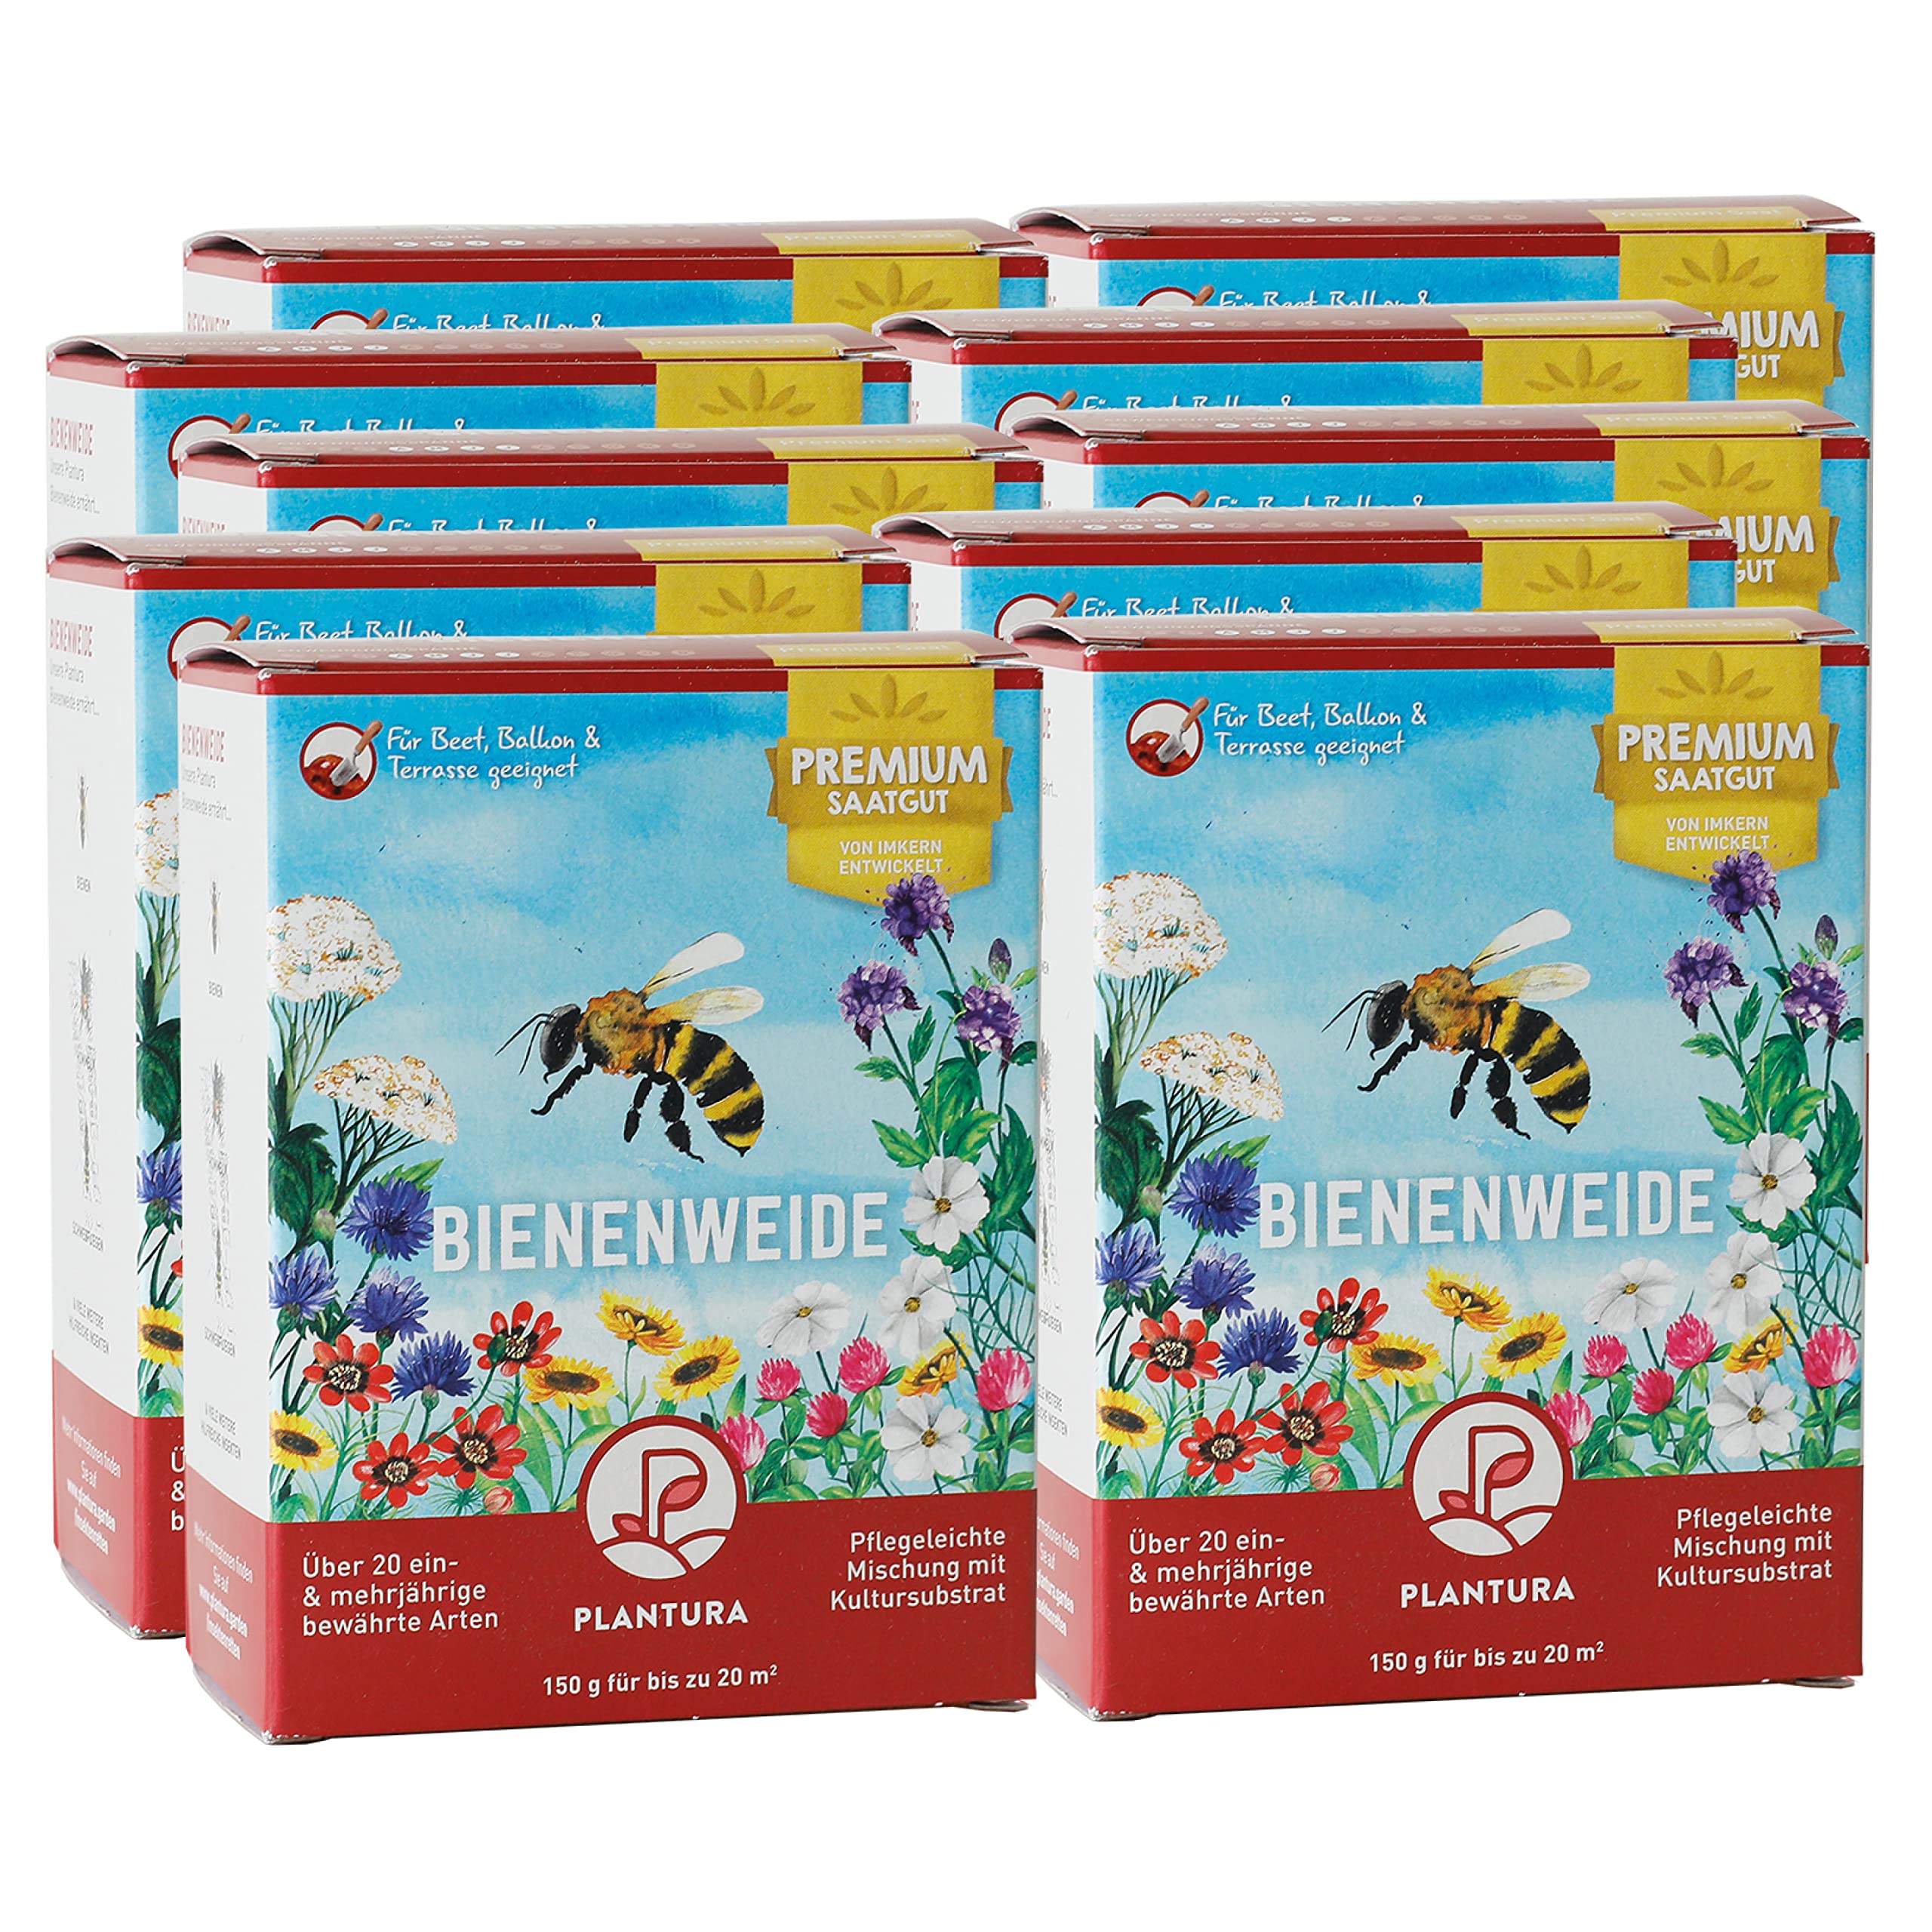 Plantura Bienenweide, ein- & mehrjährige Saatgut-Mischung für Insekten, 1500 g für 200 m²